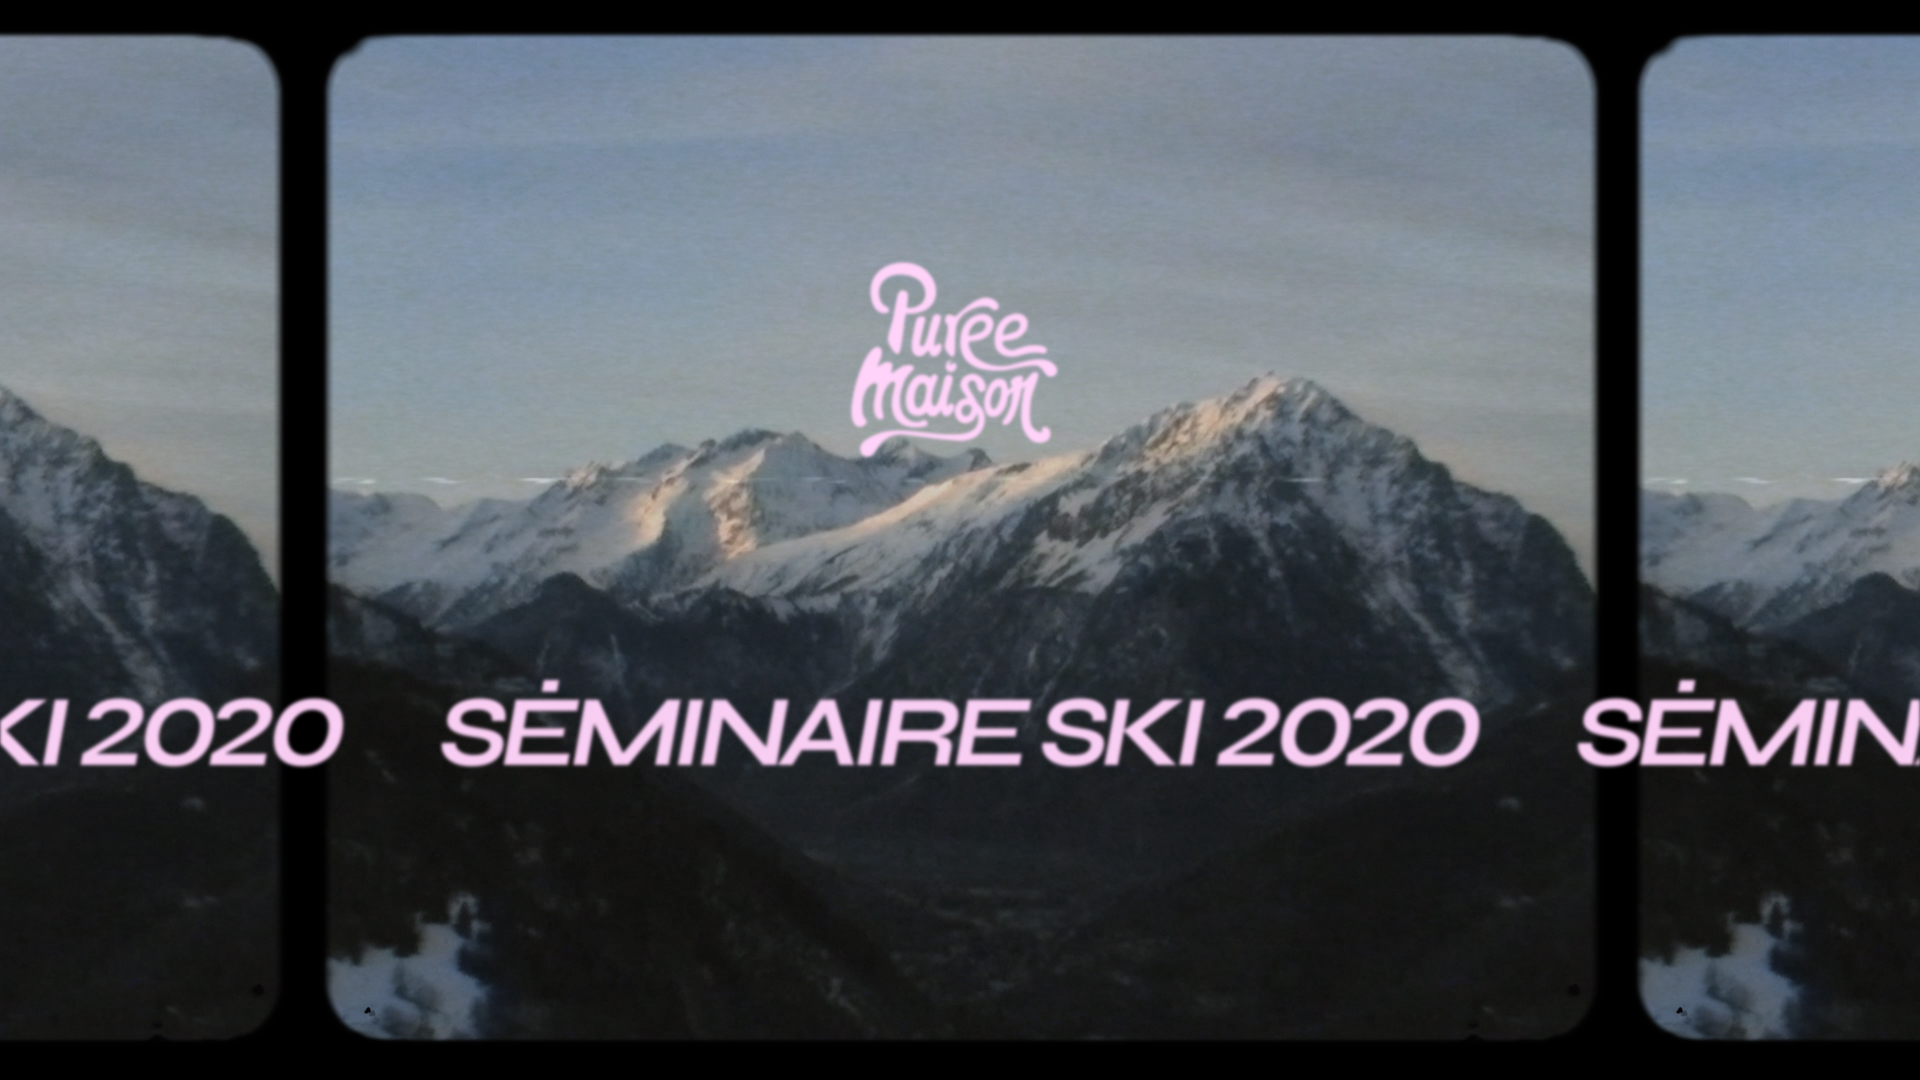 Image du cas client On commence l’année avec la 3ème édition de notre séminaire ski !